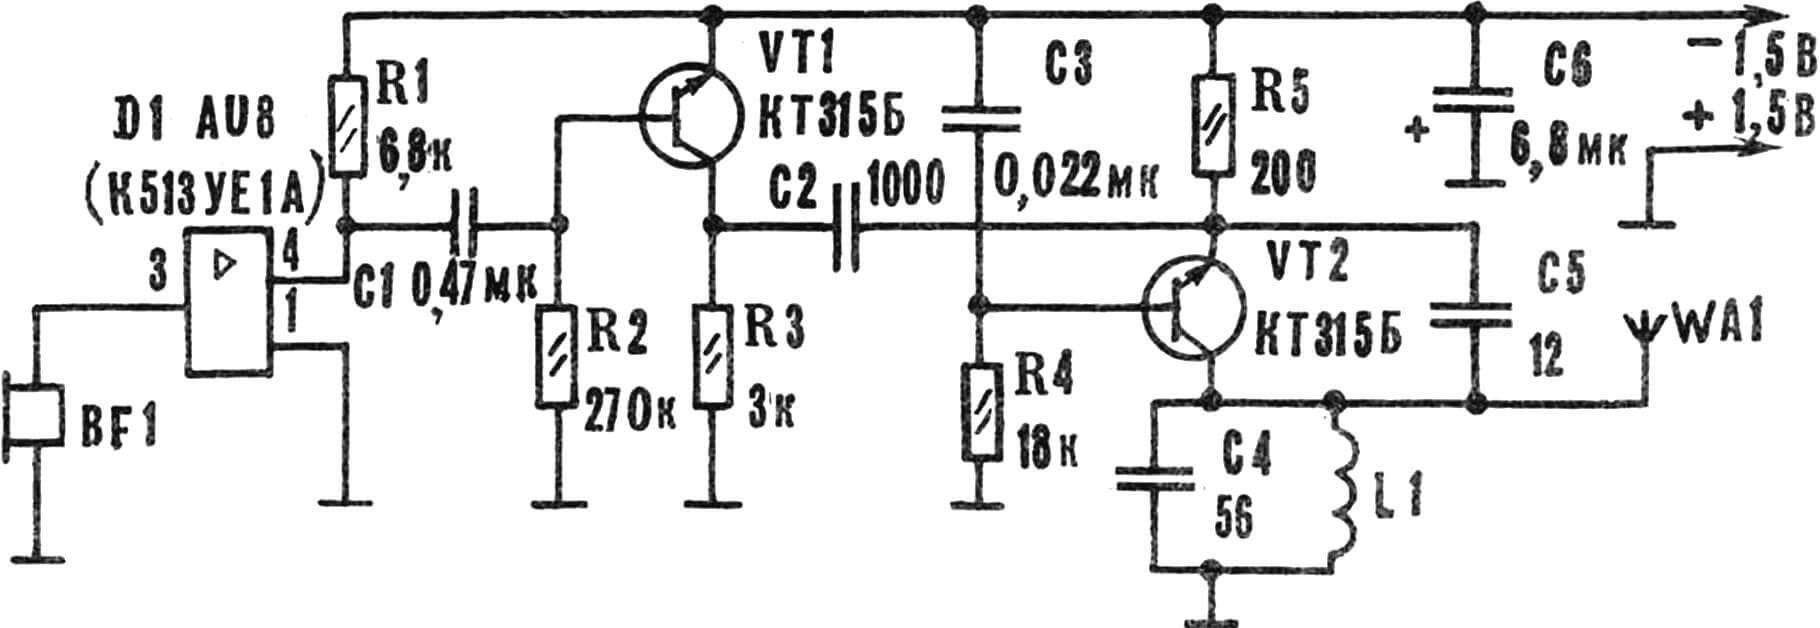 Принципиальная электрическая схема радиомикрофона.